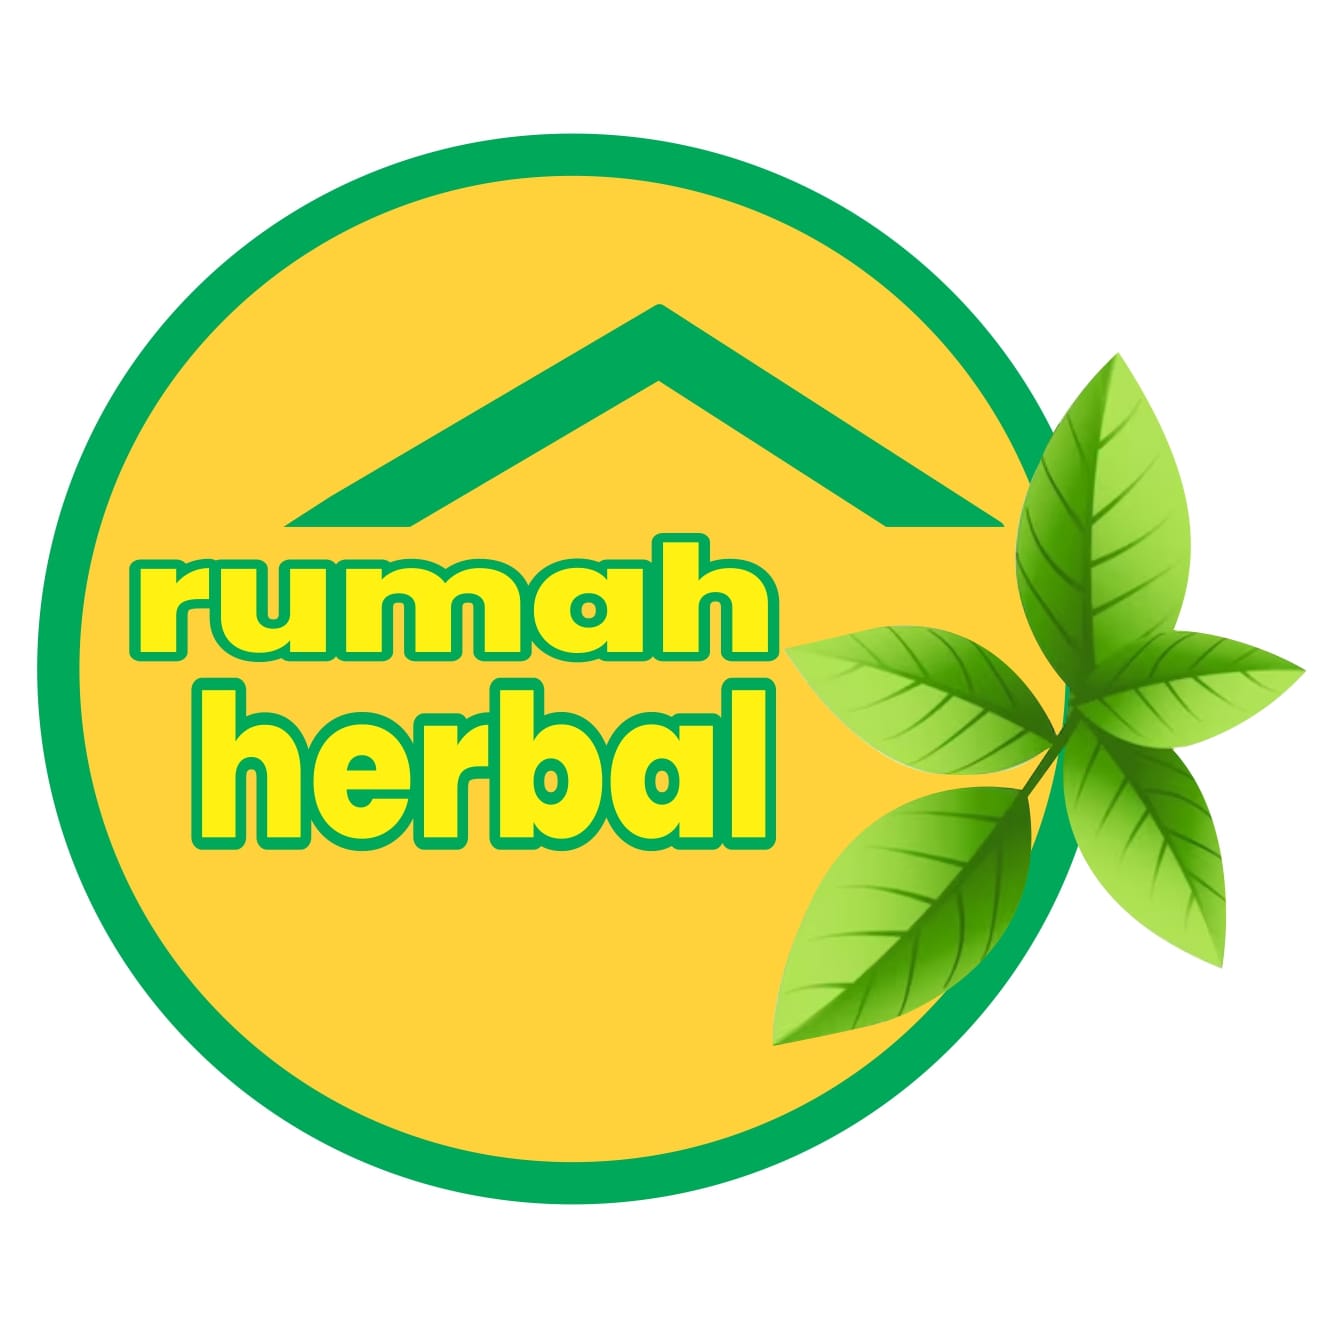 Rumah Herbal